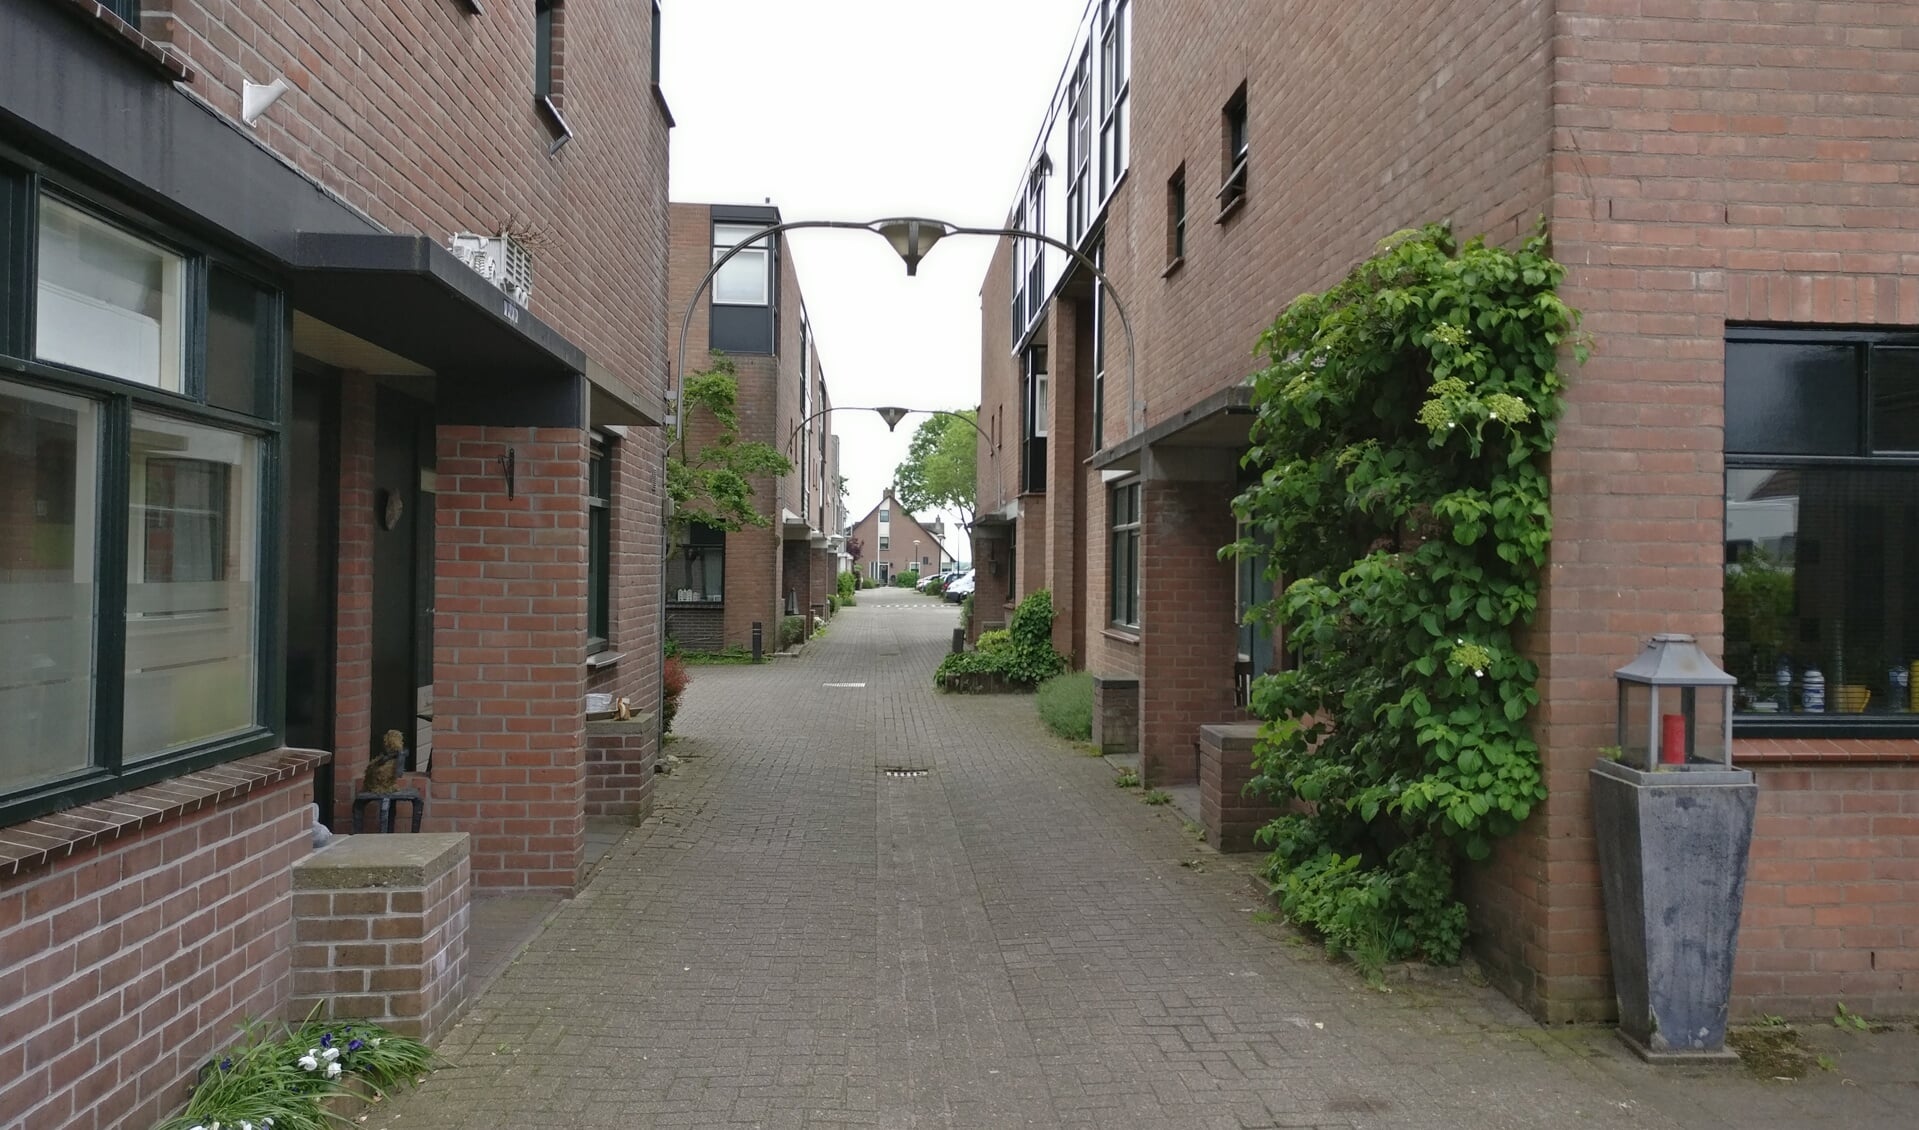  De 'nieuwbouw' in Westbroek krijgt een rioleringssysteem waarbij het regenwater meteen wordt afgevoerd naar de omliggende sloten.